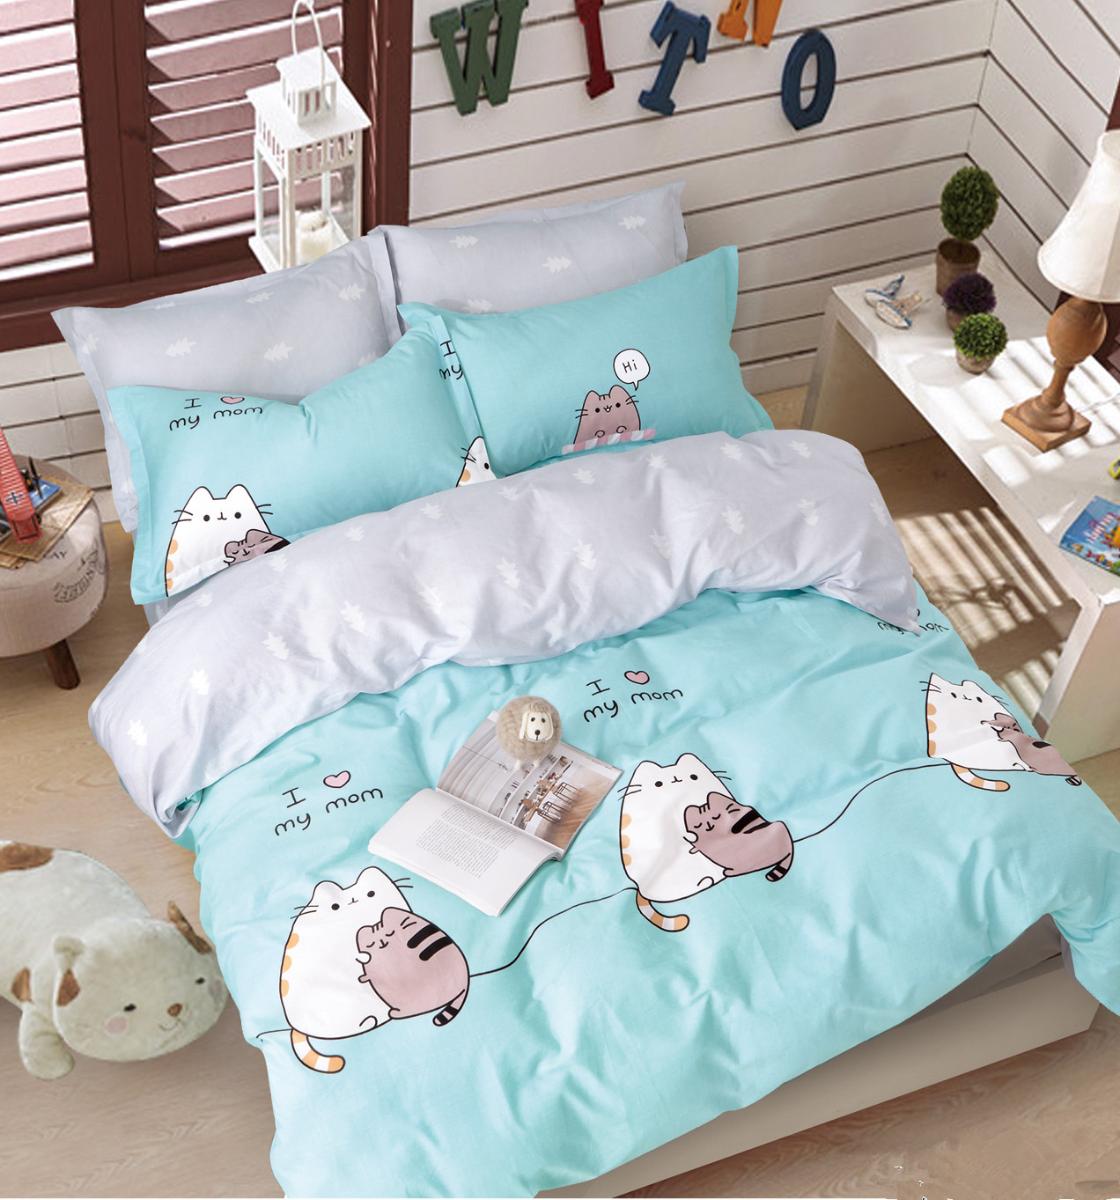 

Комплект постельного белья Tango Vip 50+70 1.5-спальный серый 1123, Серый;голубой, Vip 50+70